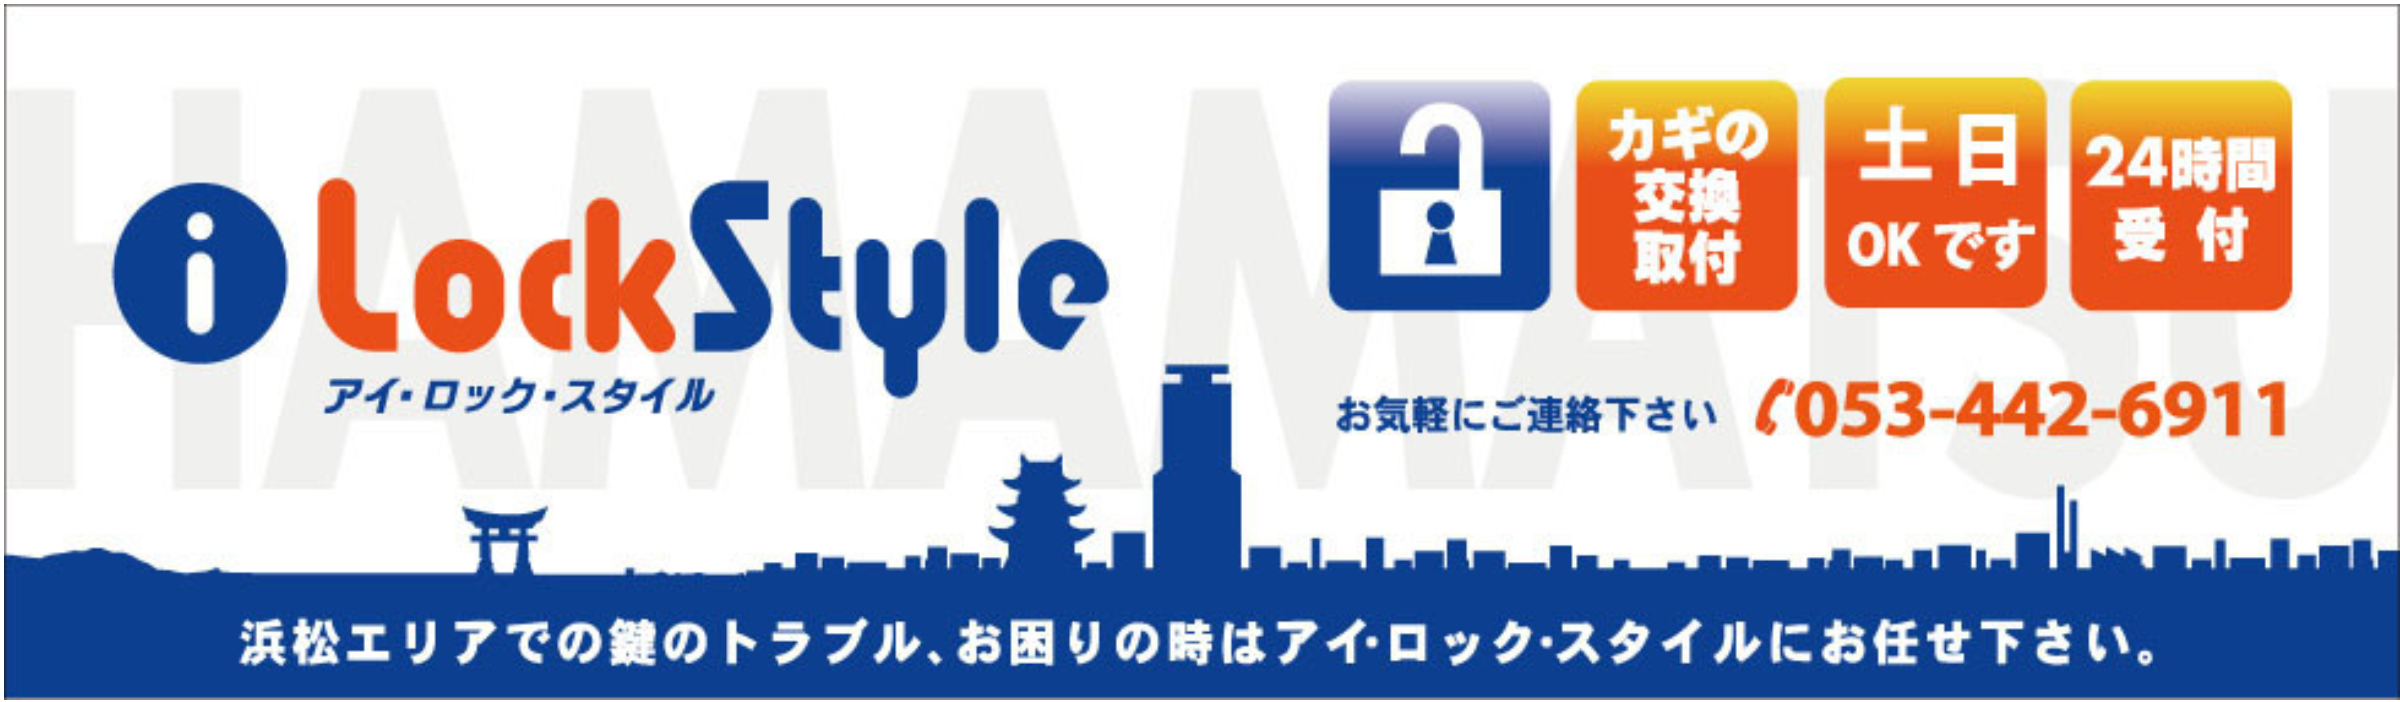 浜松市で鍵の修理｜鍵交換｜ピッキング対策など「アイロックスタイル」